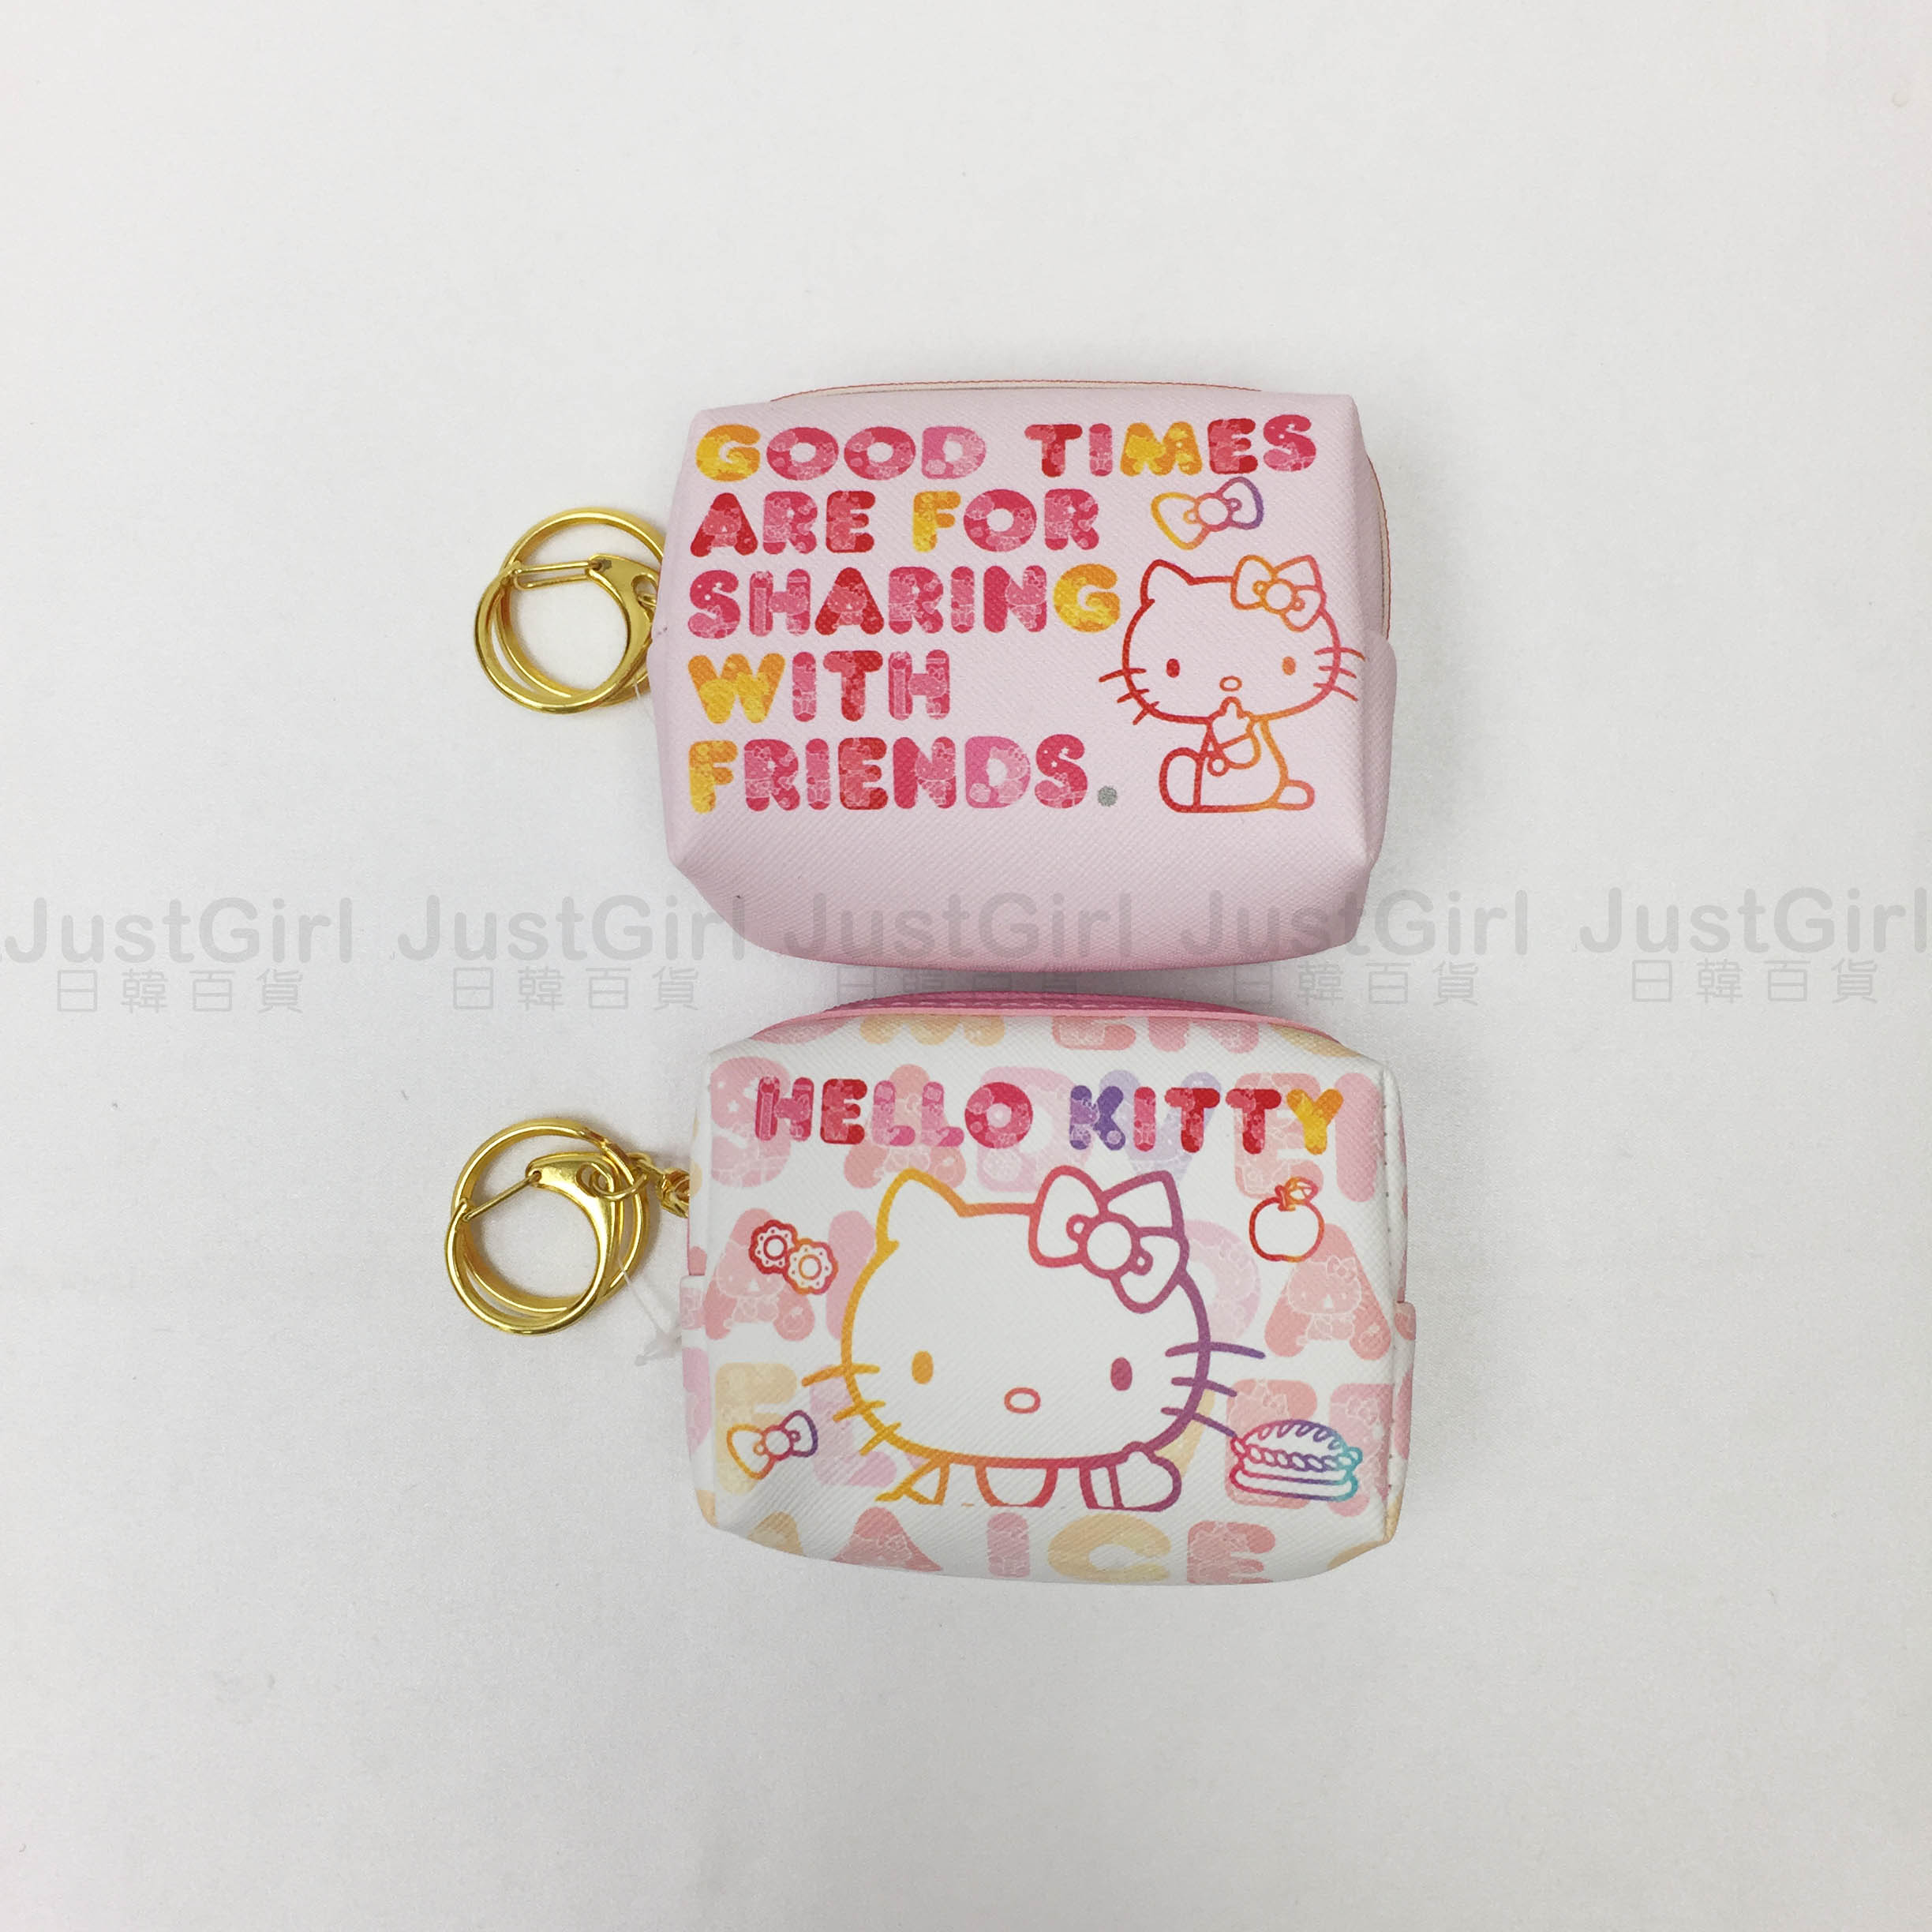 Hello Kitty 凱蒂貓 Sanrio 三麗鷗 零錢鑰匙包 收納包 日本進口正版授權 JUST GIRL